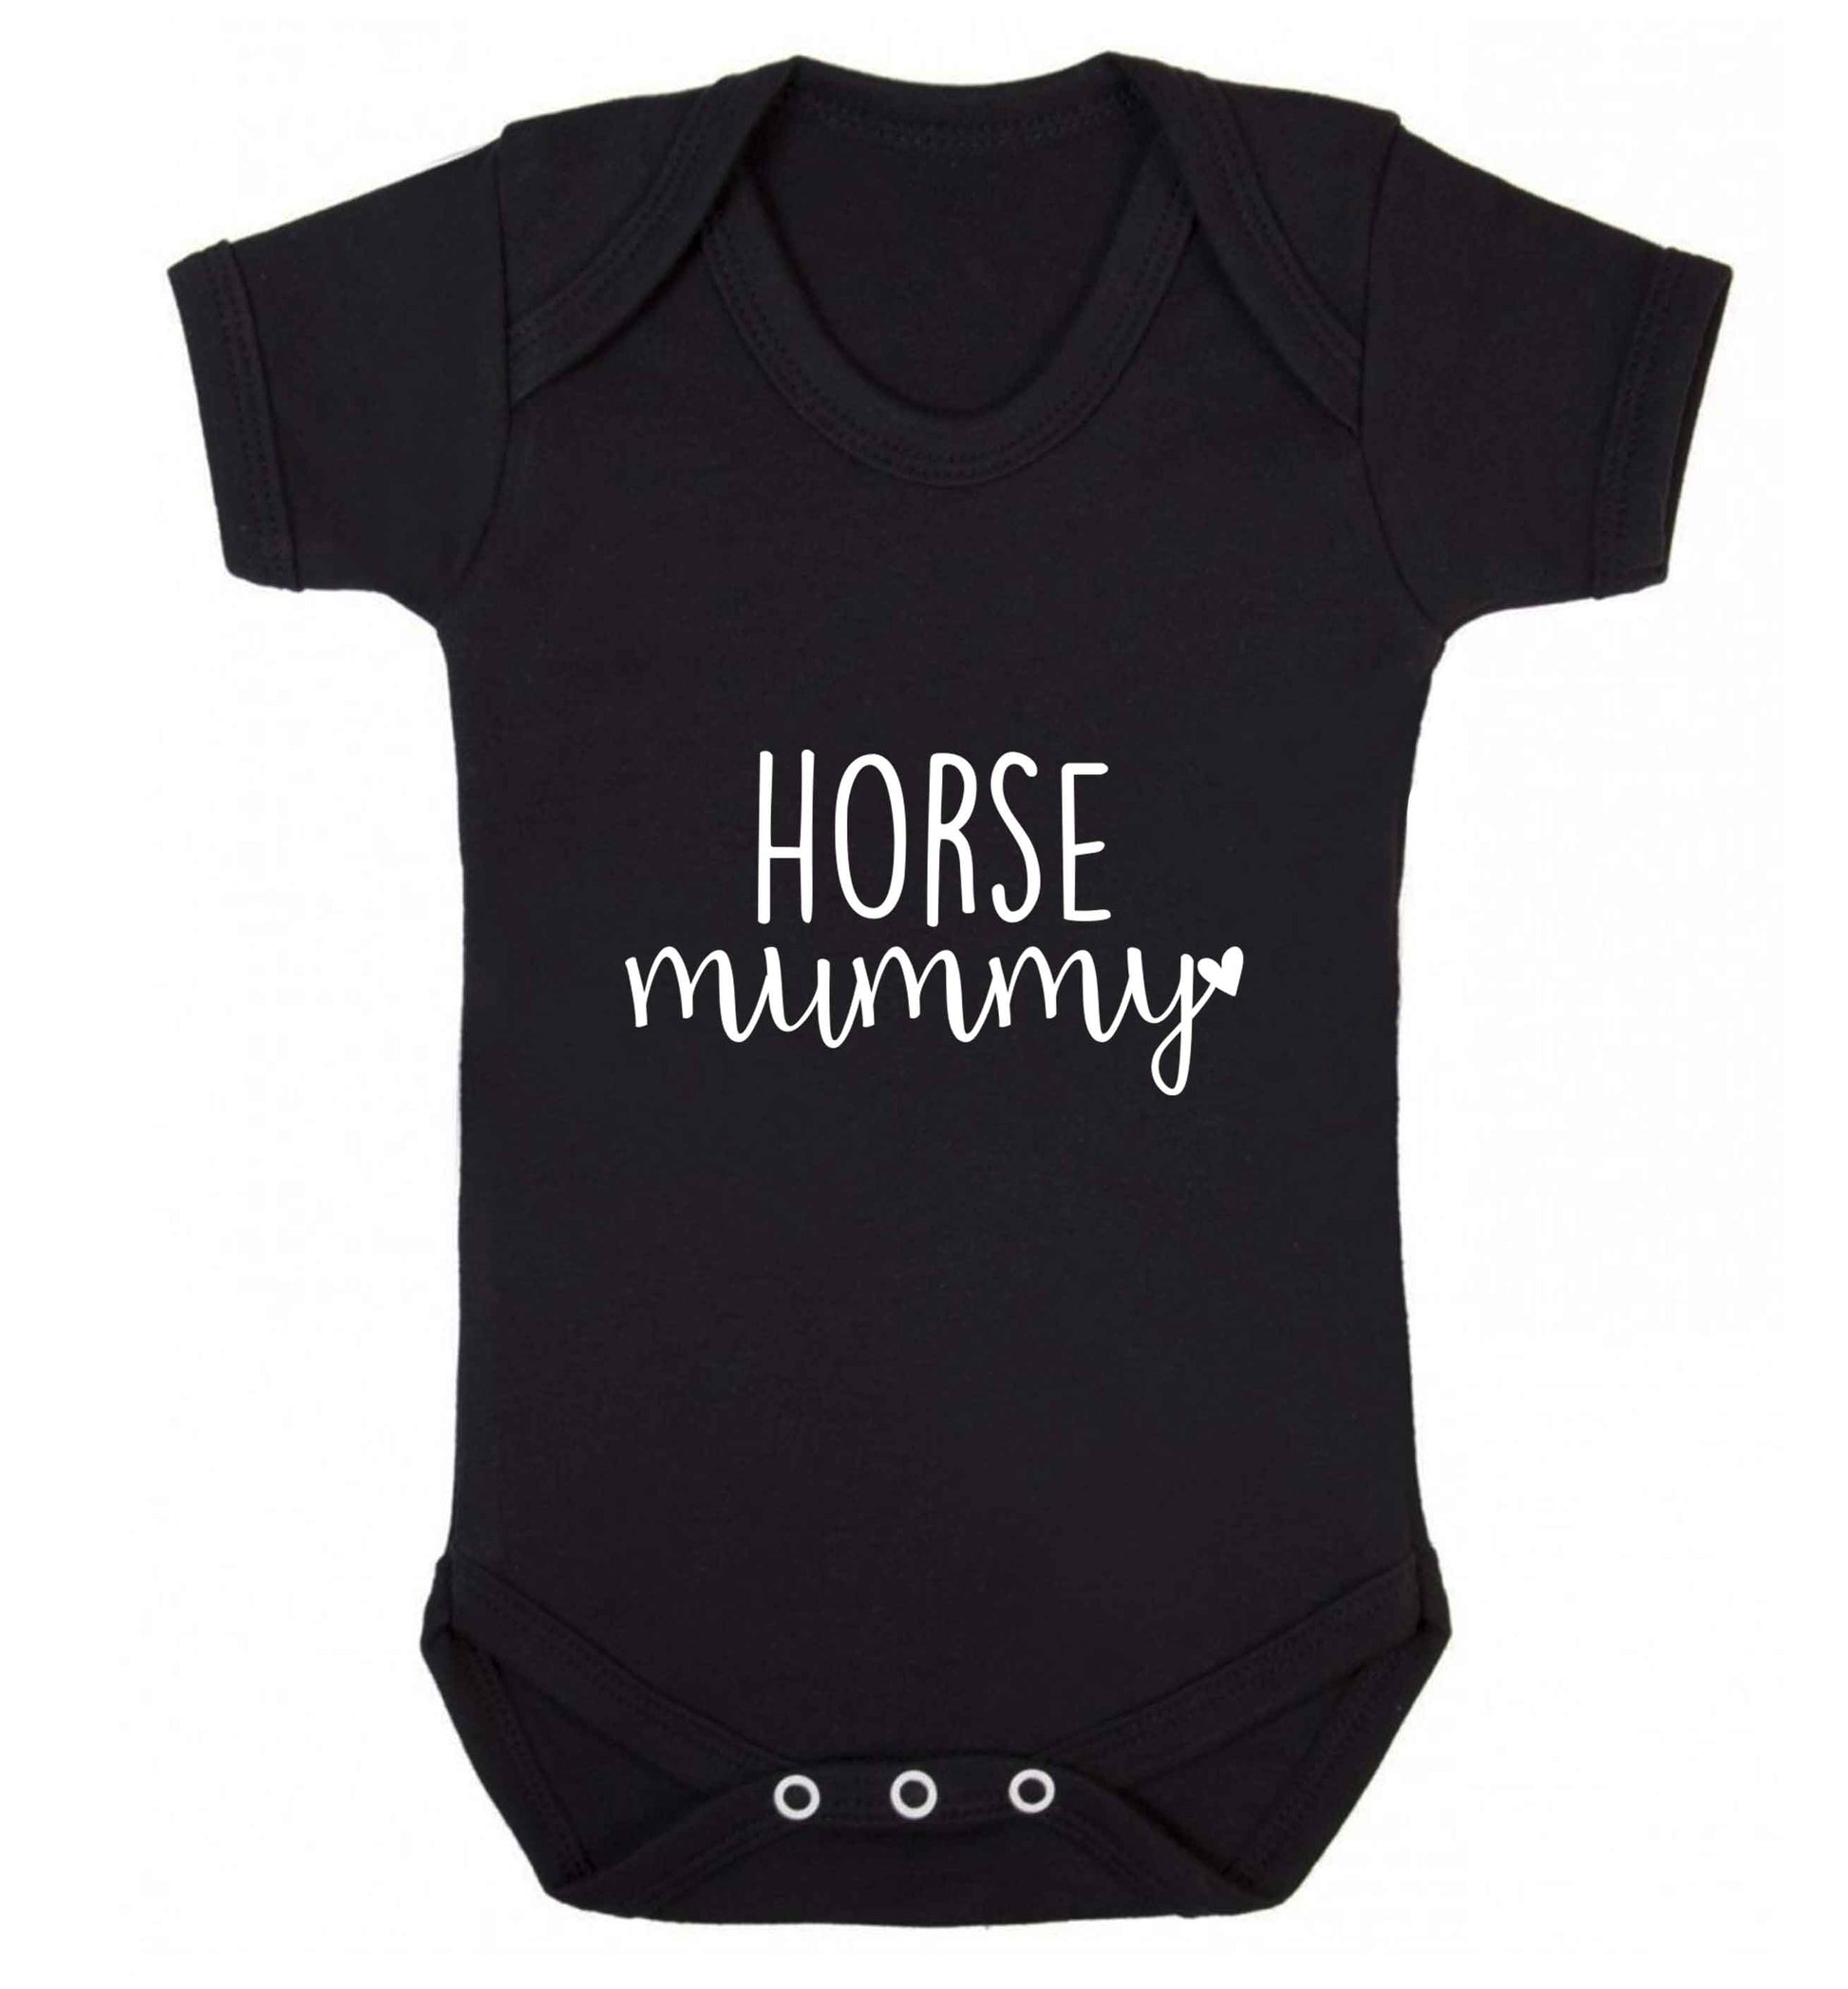 Horse mummy baby vest black 18-24 months